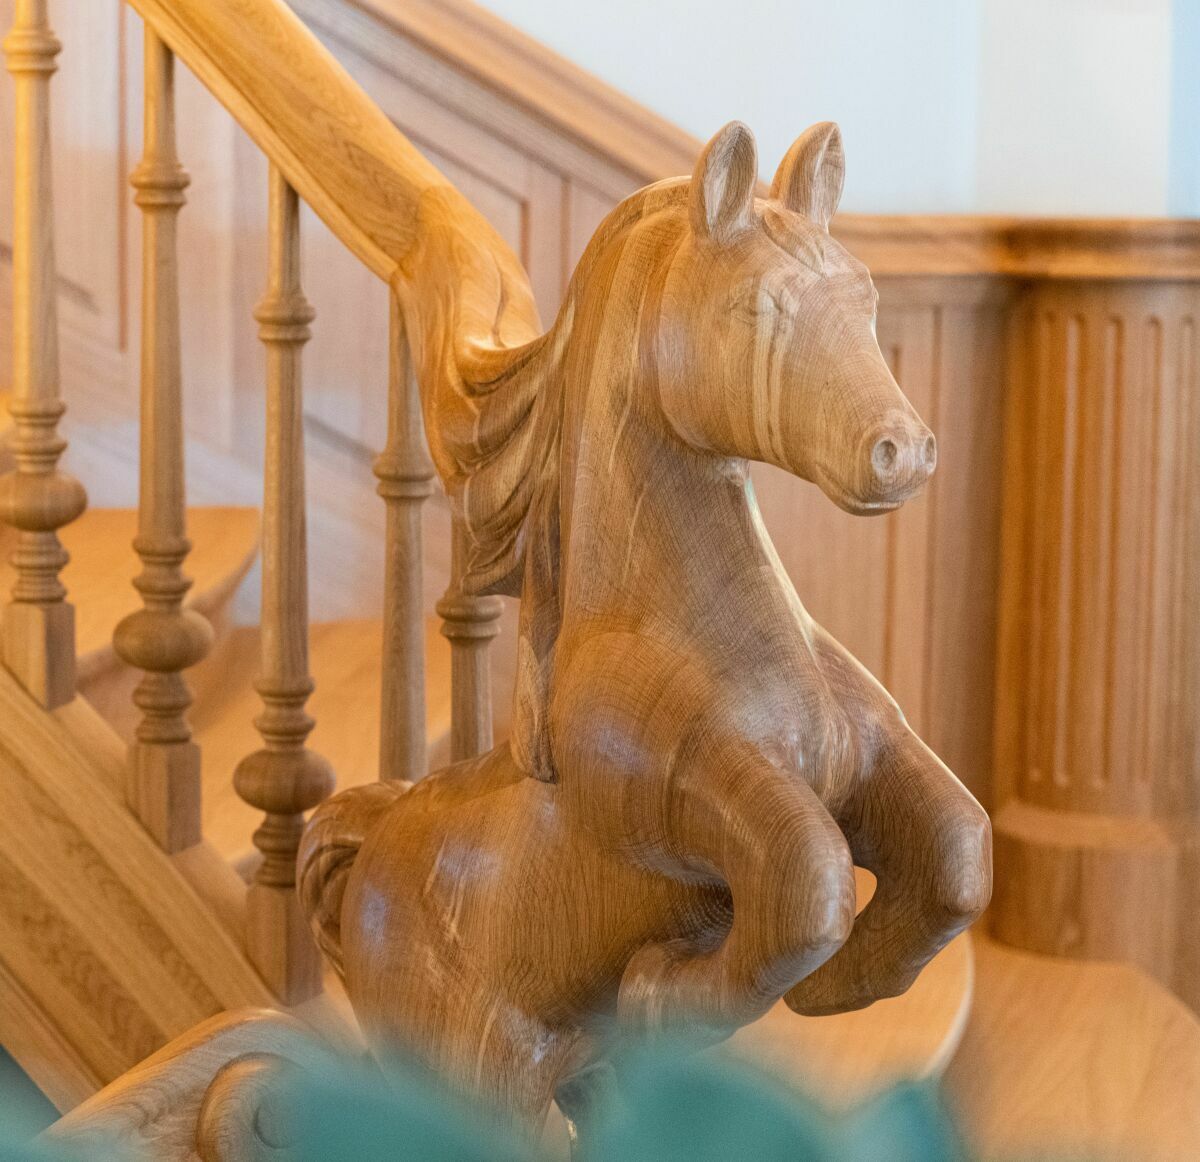 Das typische Oldenburger Pferd findet sich in der am Handlauf der Holztreppe in der „Oldenburger Mühle“